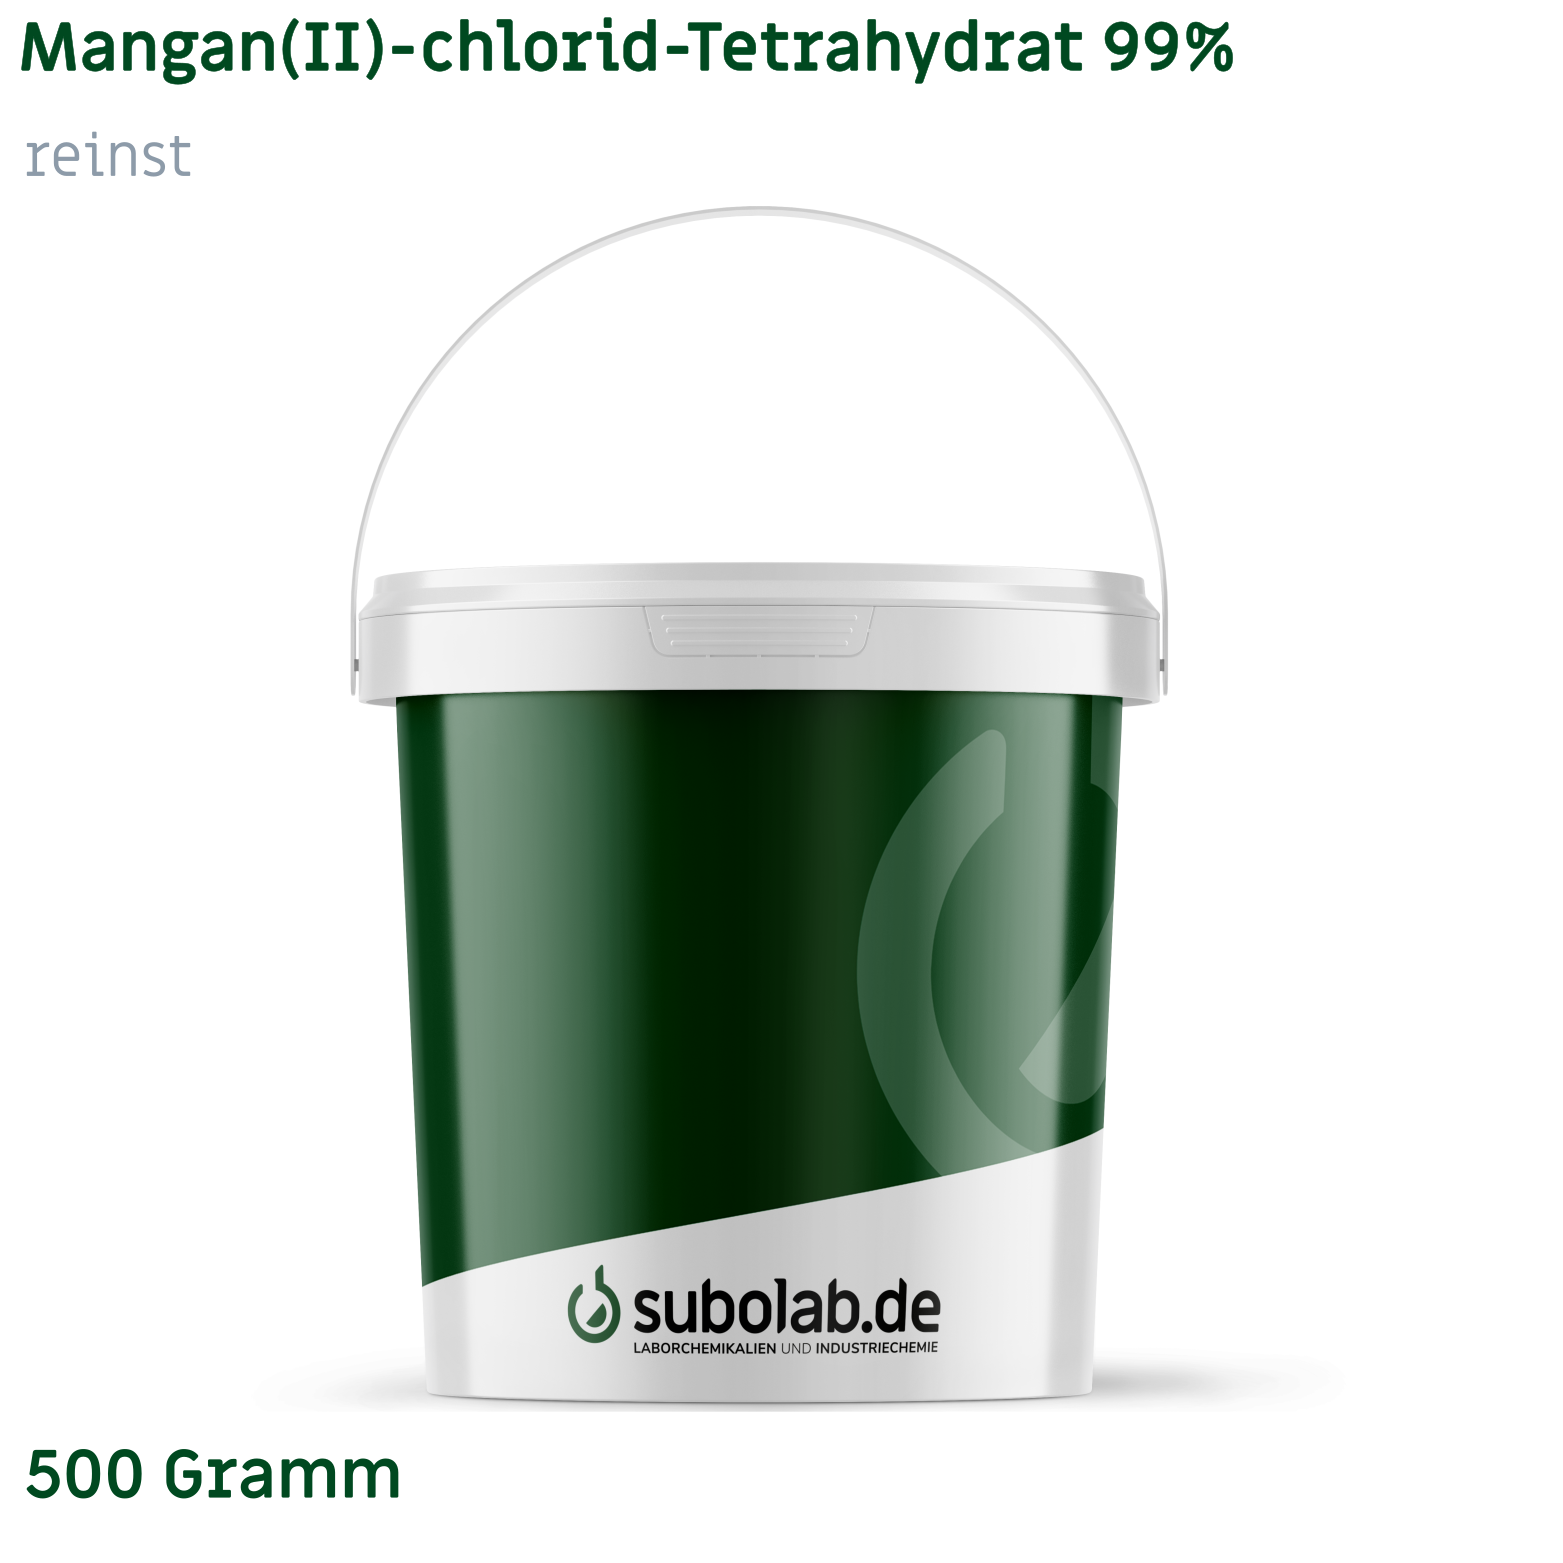 Bild von Mangan(II)-chlorid - Tetrahydrat 99% reinst (500 Gramm)